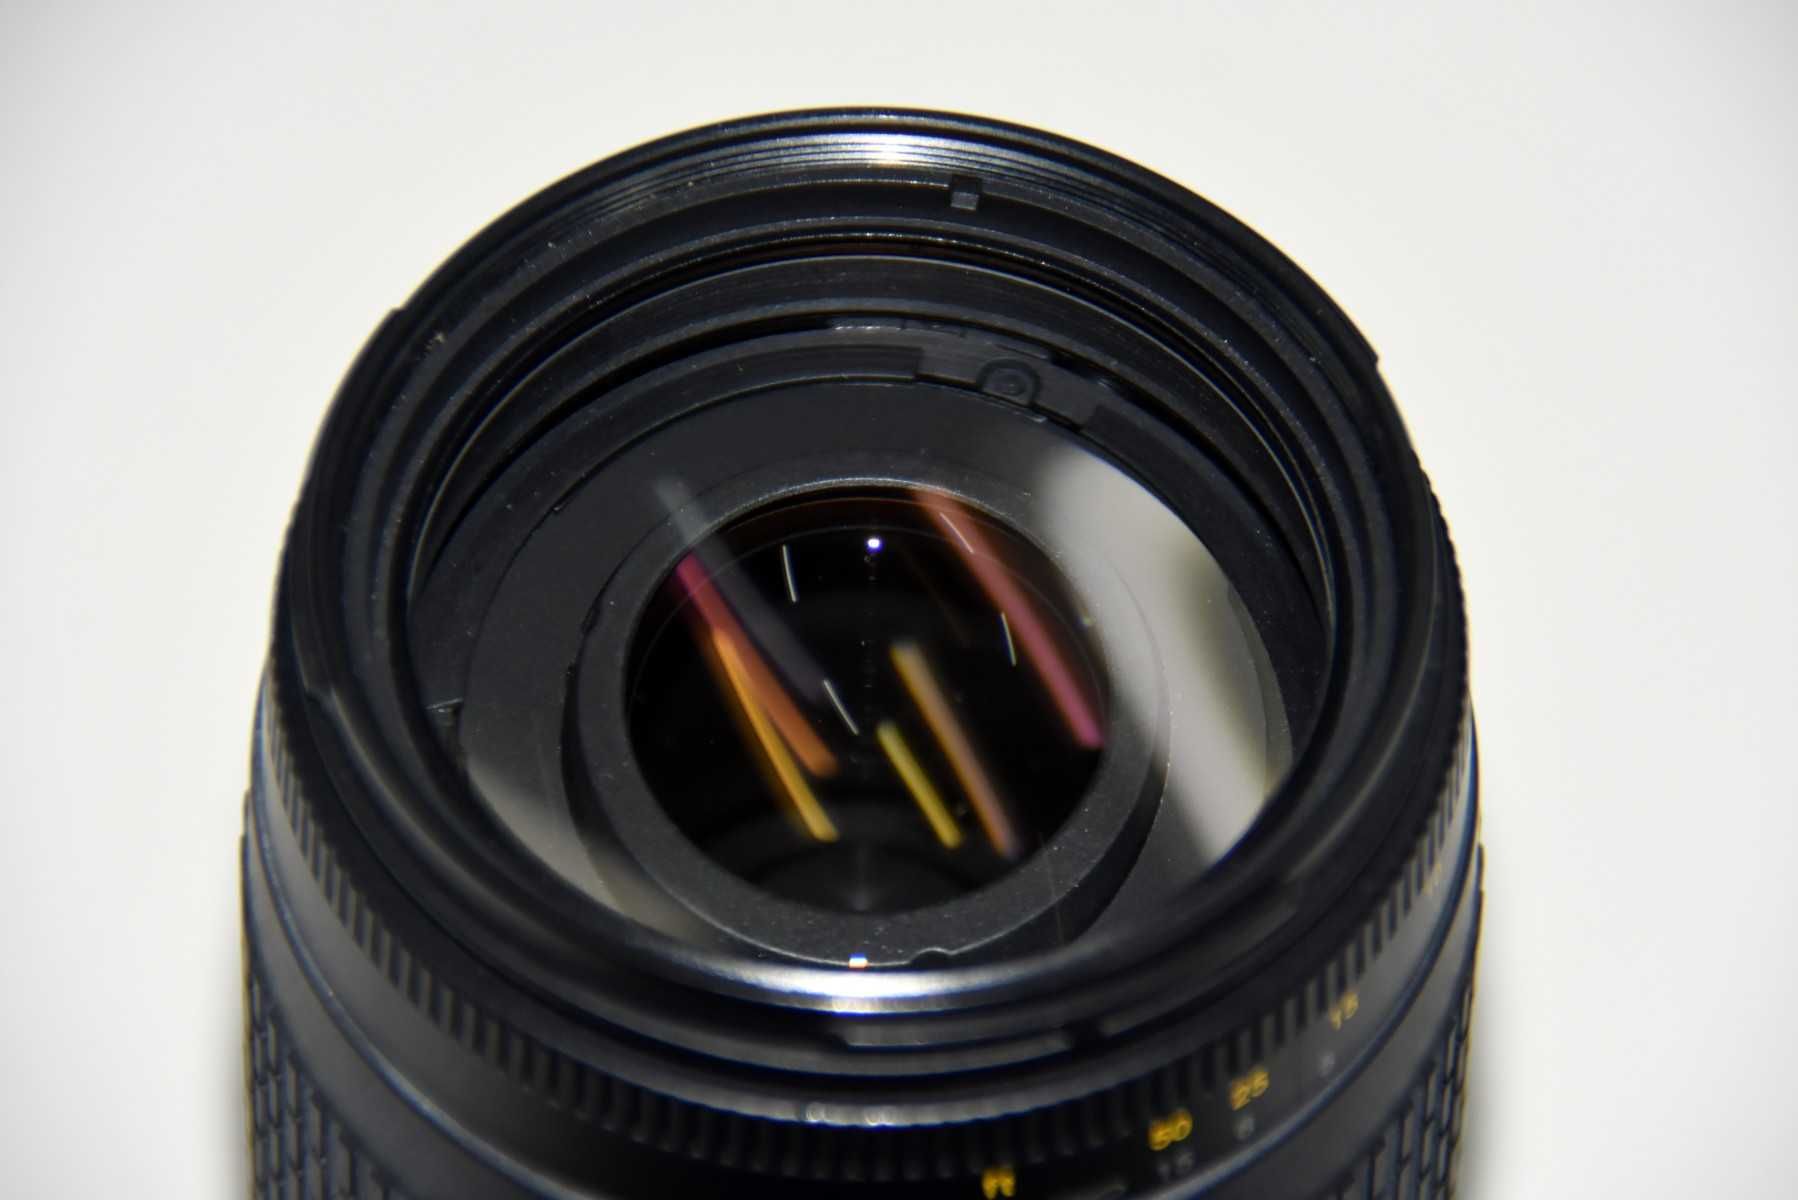 Nikon AF Nikkor 70-300mm 1:4-5.G